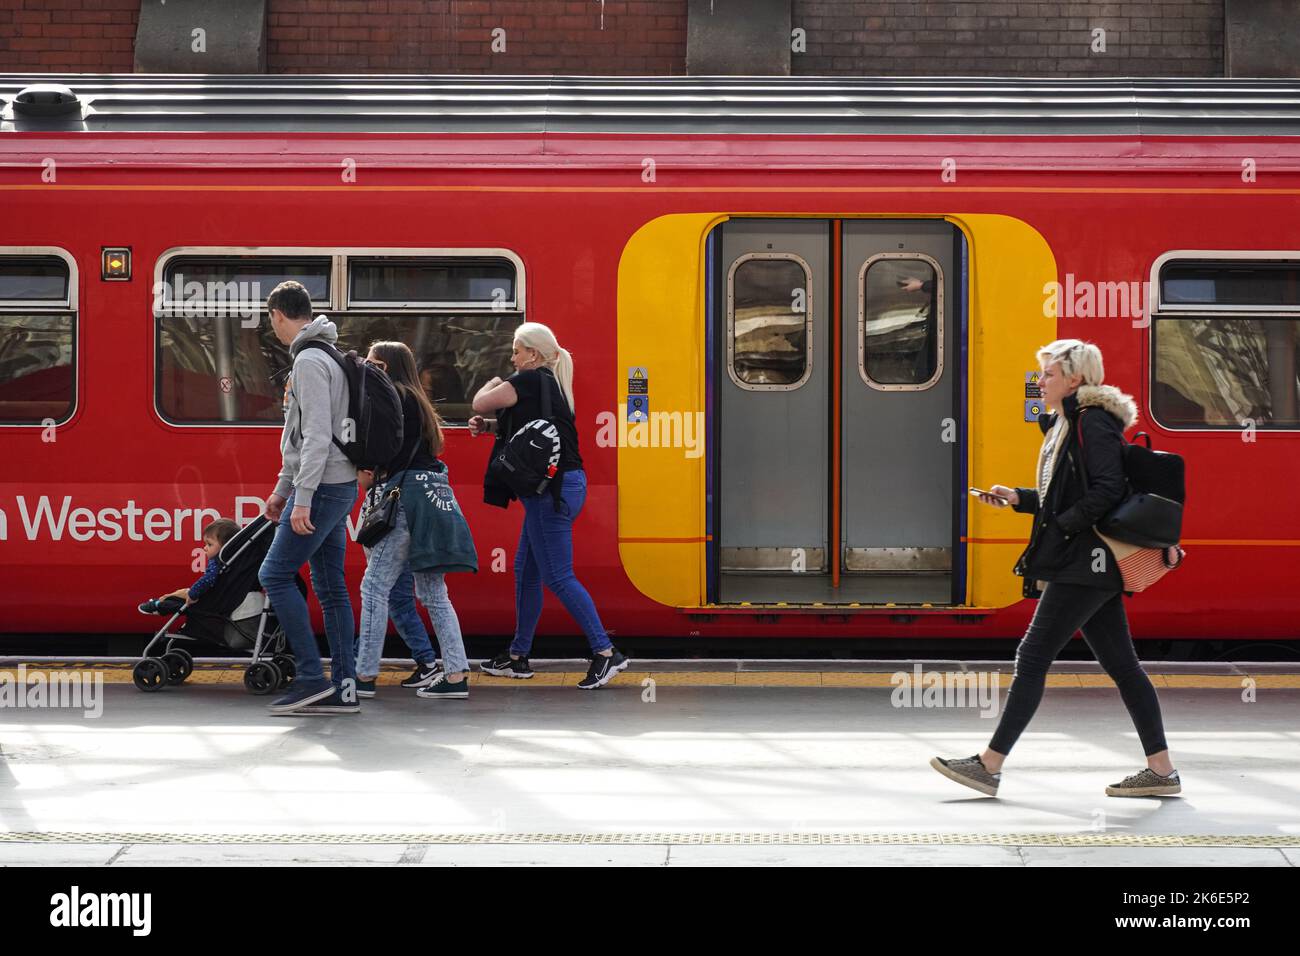 Passagers quittant le train South Western Railway à la gare de Londres Waterloo, Angleterre Royaume-Uni Banque D'Images